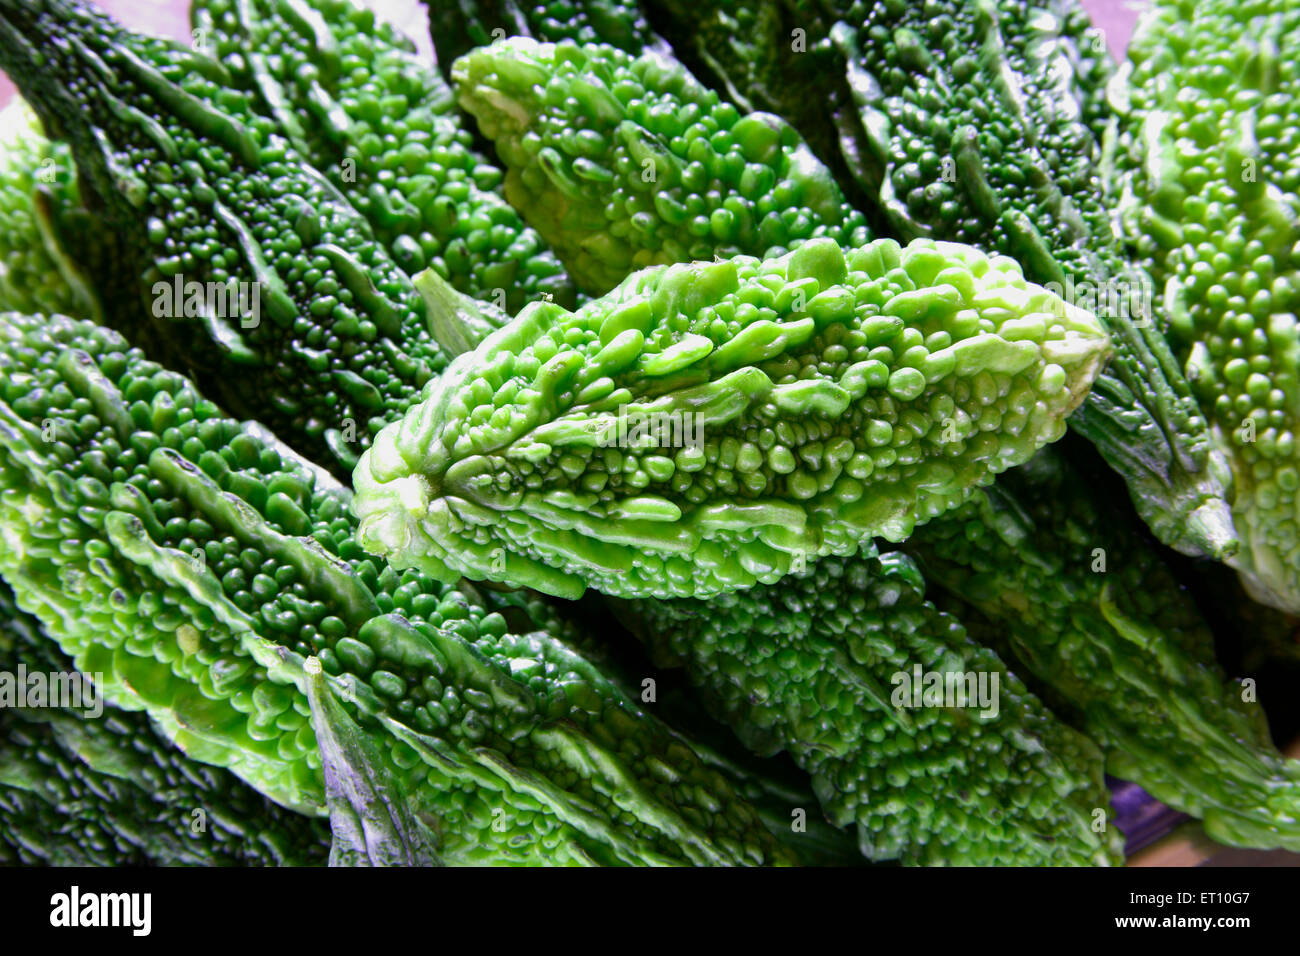 Green vegetable ; karela bitter gourd momordica charantia Stock Photo